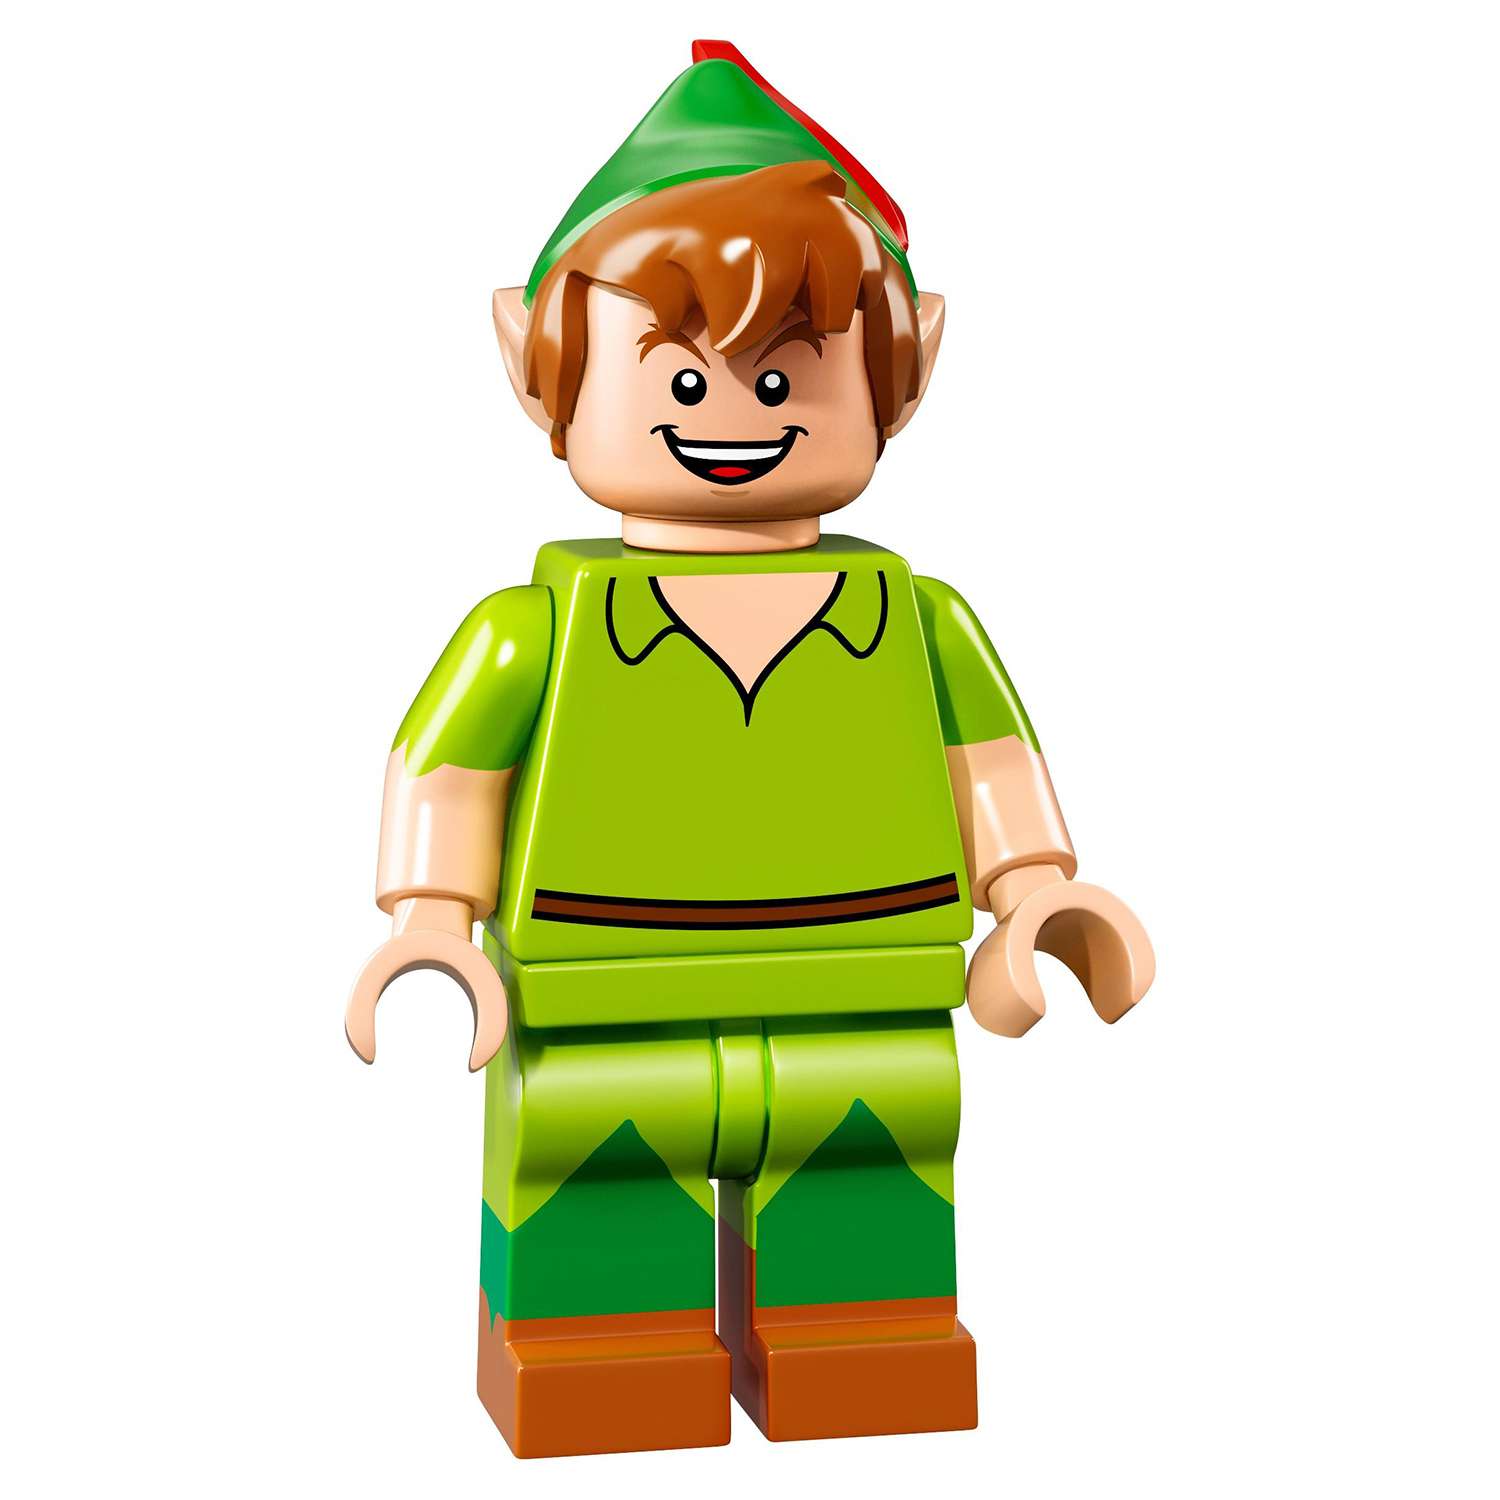 Конструктор LEGO Minifigures Минифигурки LEGO®, серия Дисней (71012) - фото 28